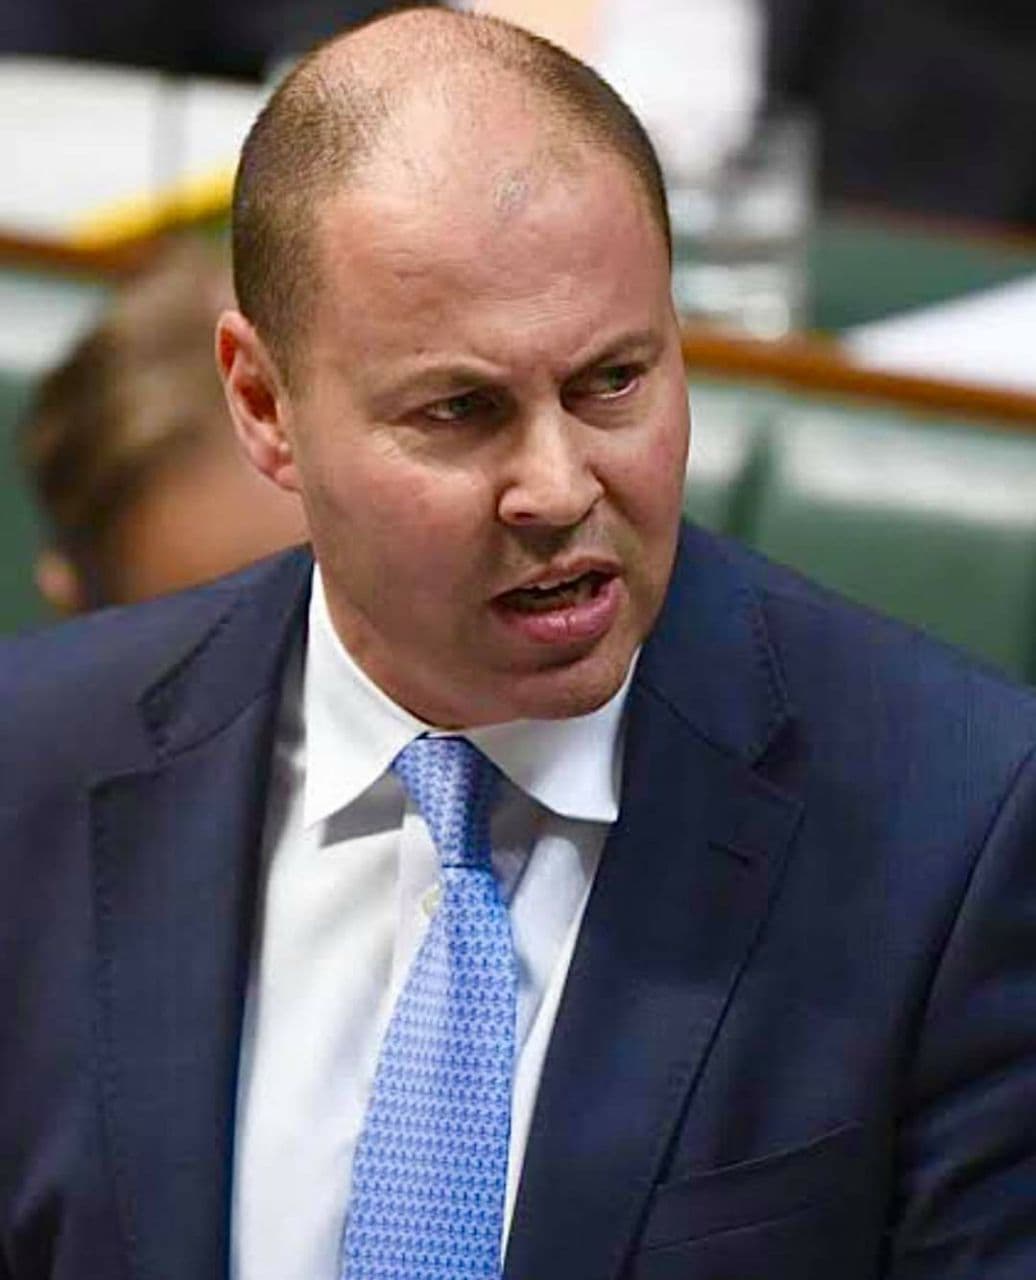 اخبار استراليا - أعلن وزير الخزانة الفيدرالي الأسترالي جوش فرايدنبيرغ عن خطة أستراليا في استقبال المهاجرين لعام 2022. وبحسب ما ذكر